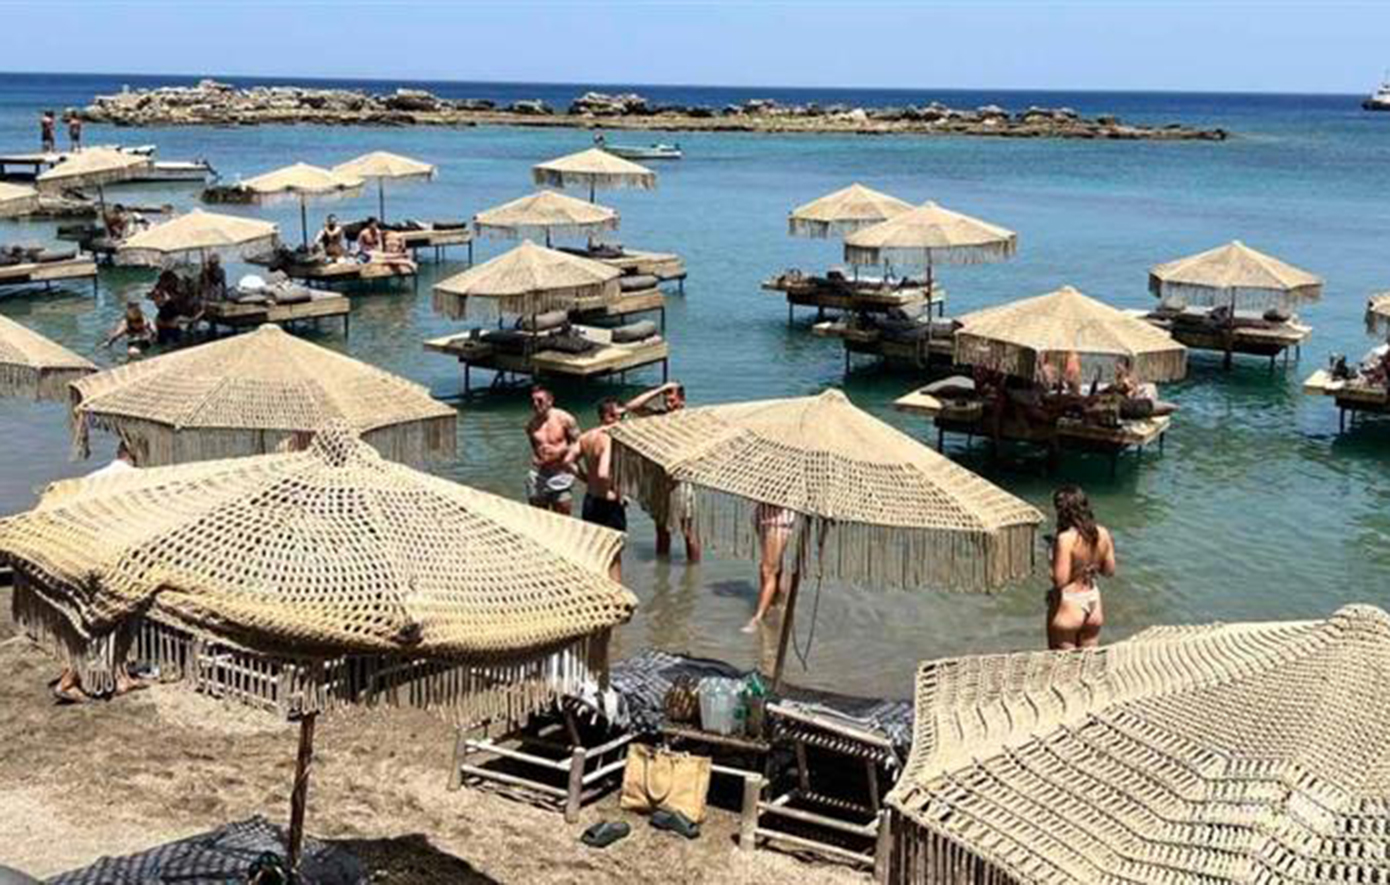 Ξηλώνουν αυθαίρετες κατασκευές σε παραλία της Ρόδου – Χατζηδάκης: Όσοι παρανομούν, θα μας βρουν απέναντί τους